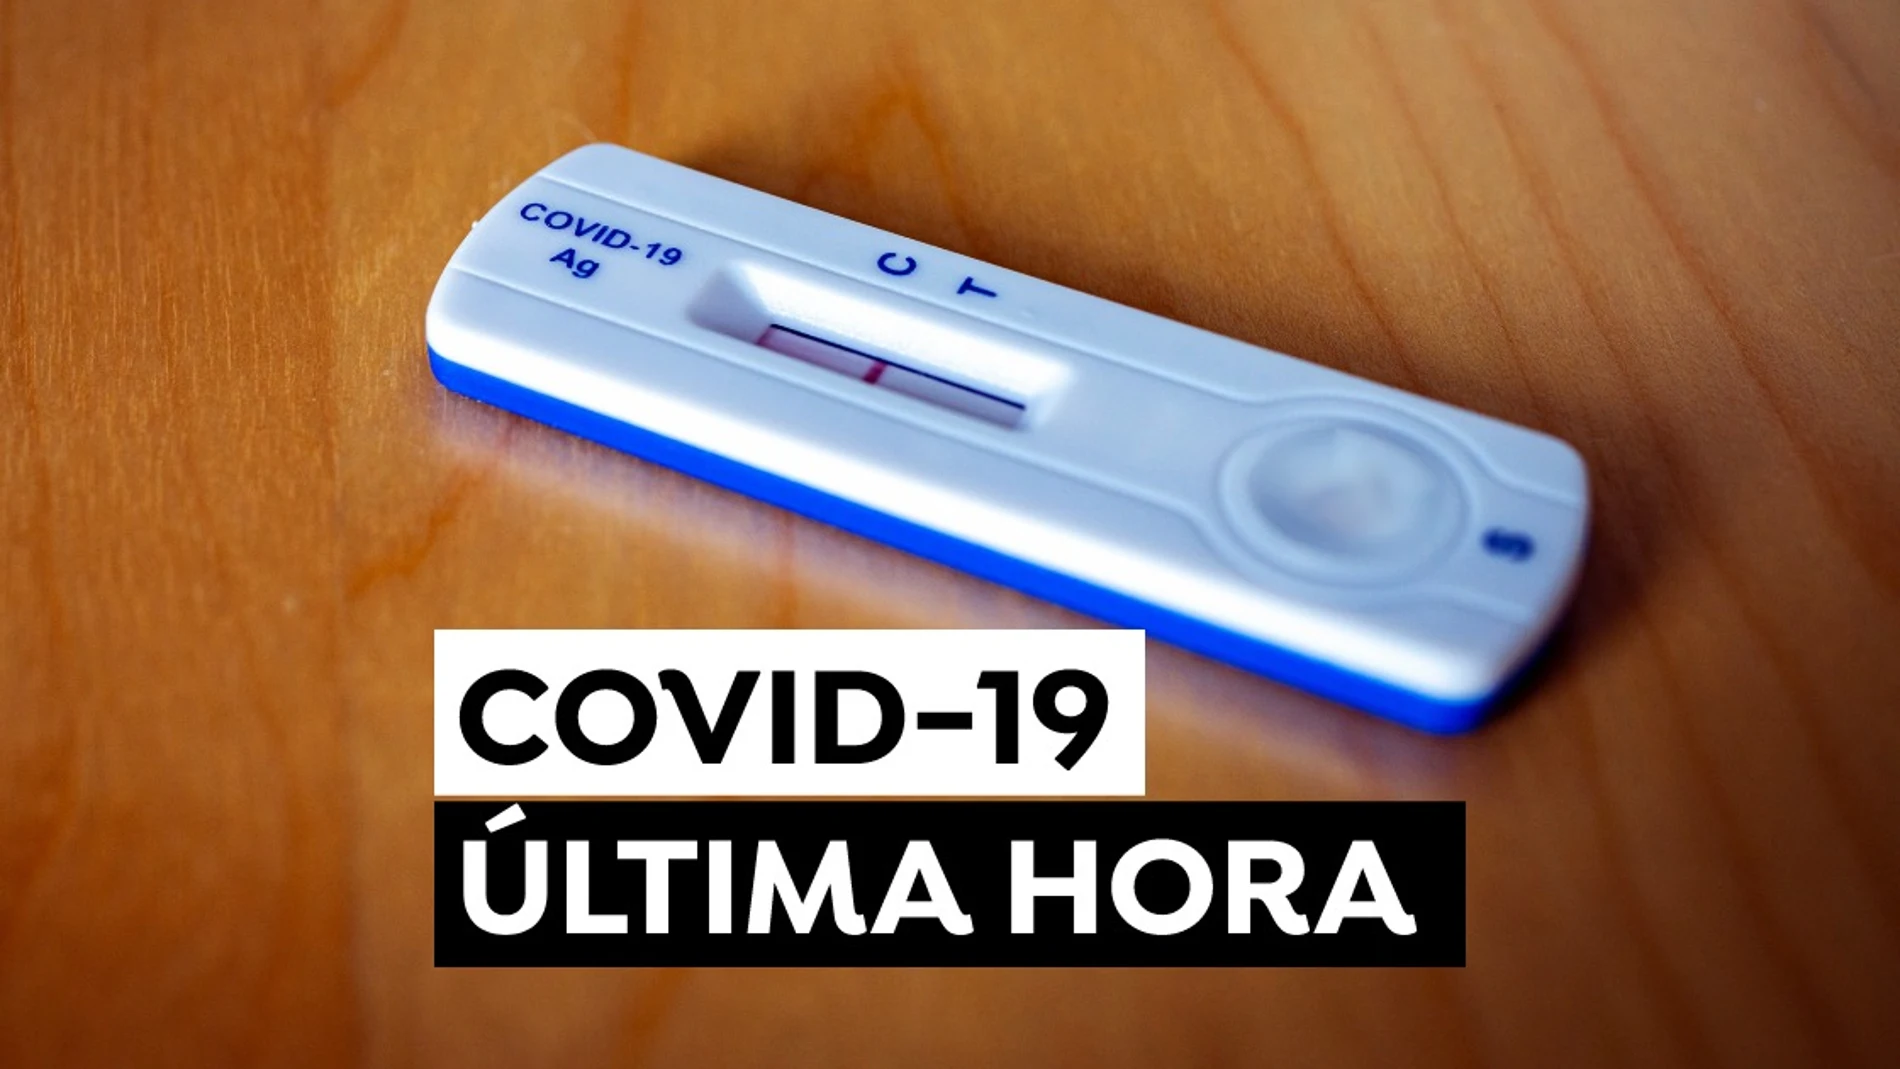 Coronavirus hoy: Variante ómicron, test de antígenos y última hora del COVID-19 en España